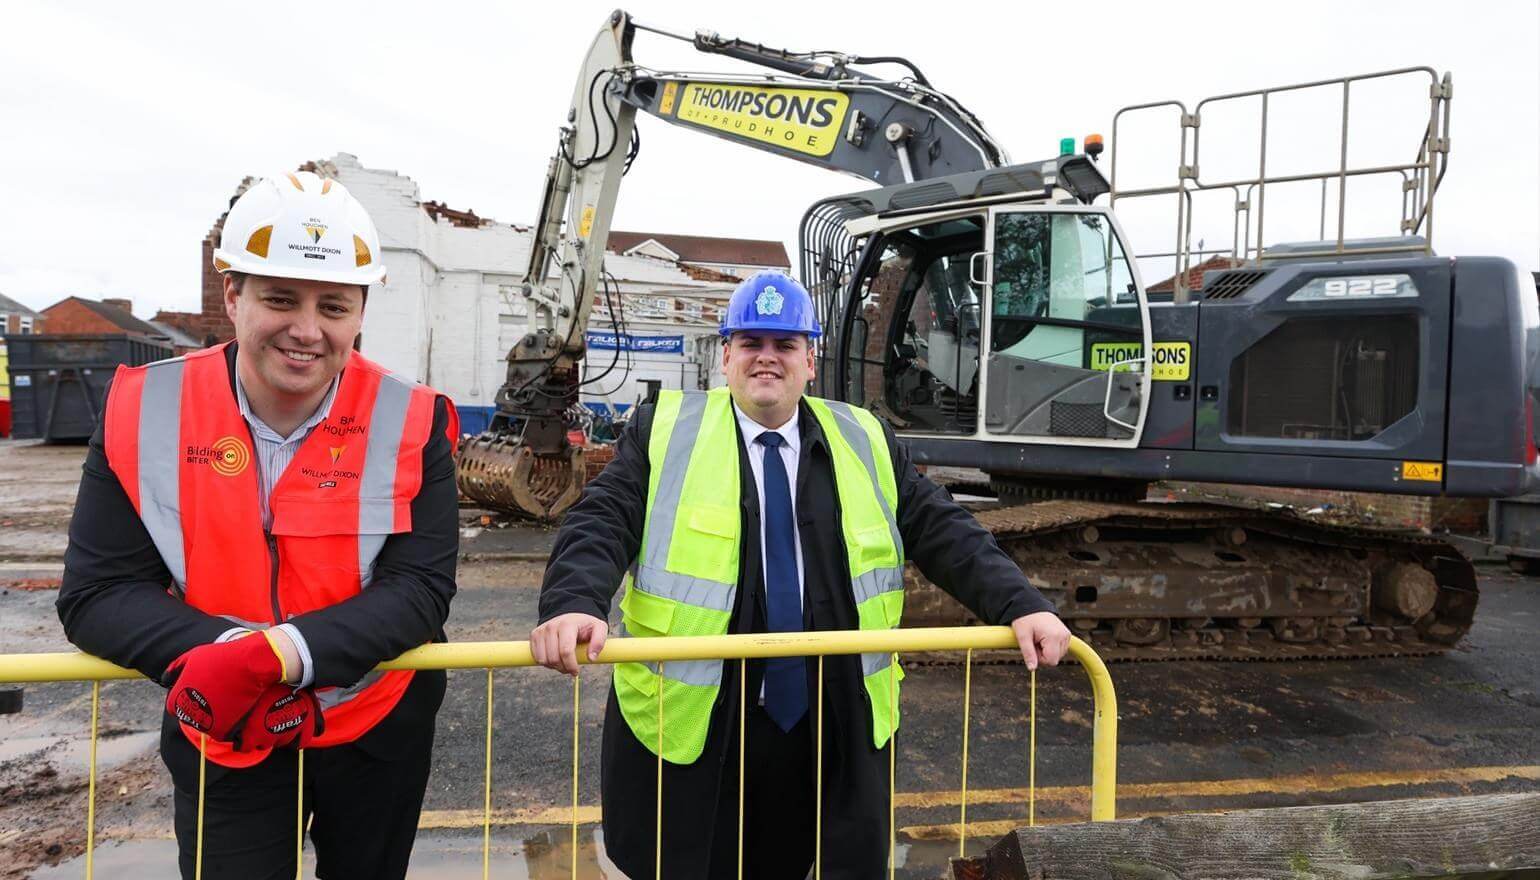 Work underway on station's £100million redevelopment